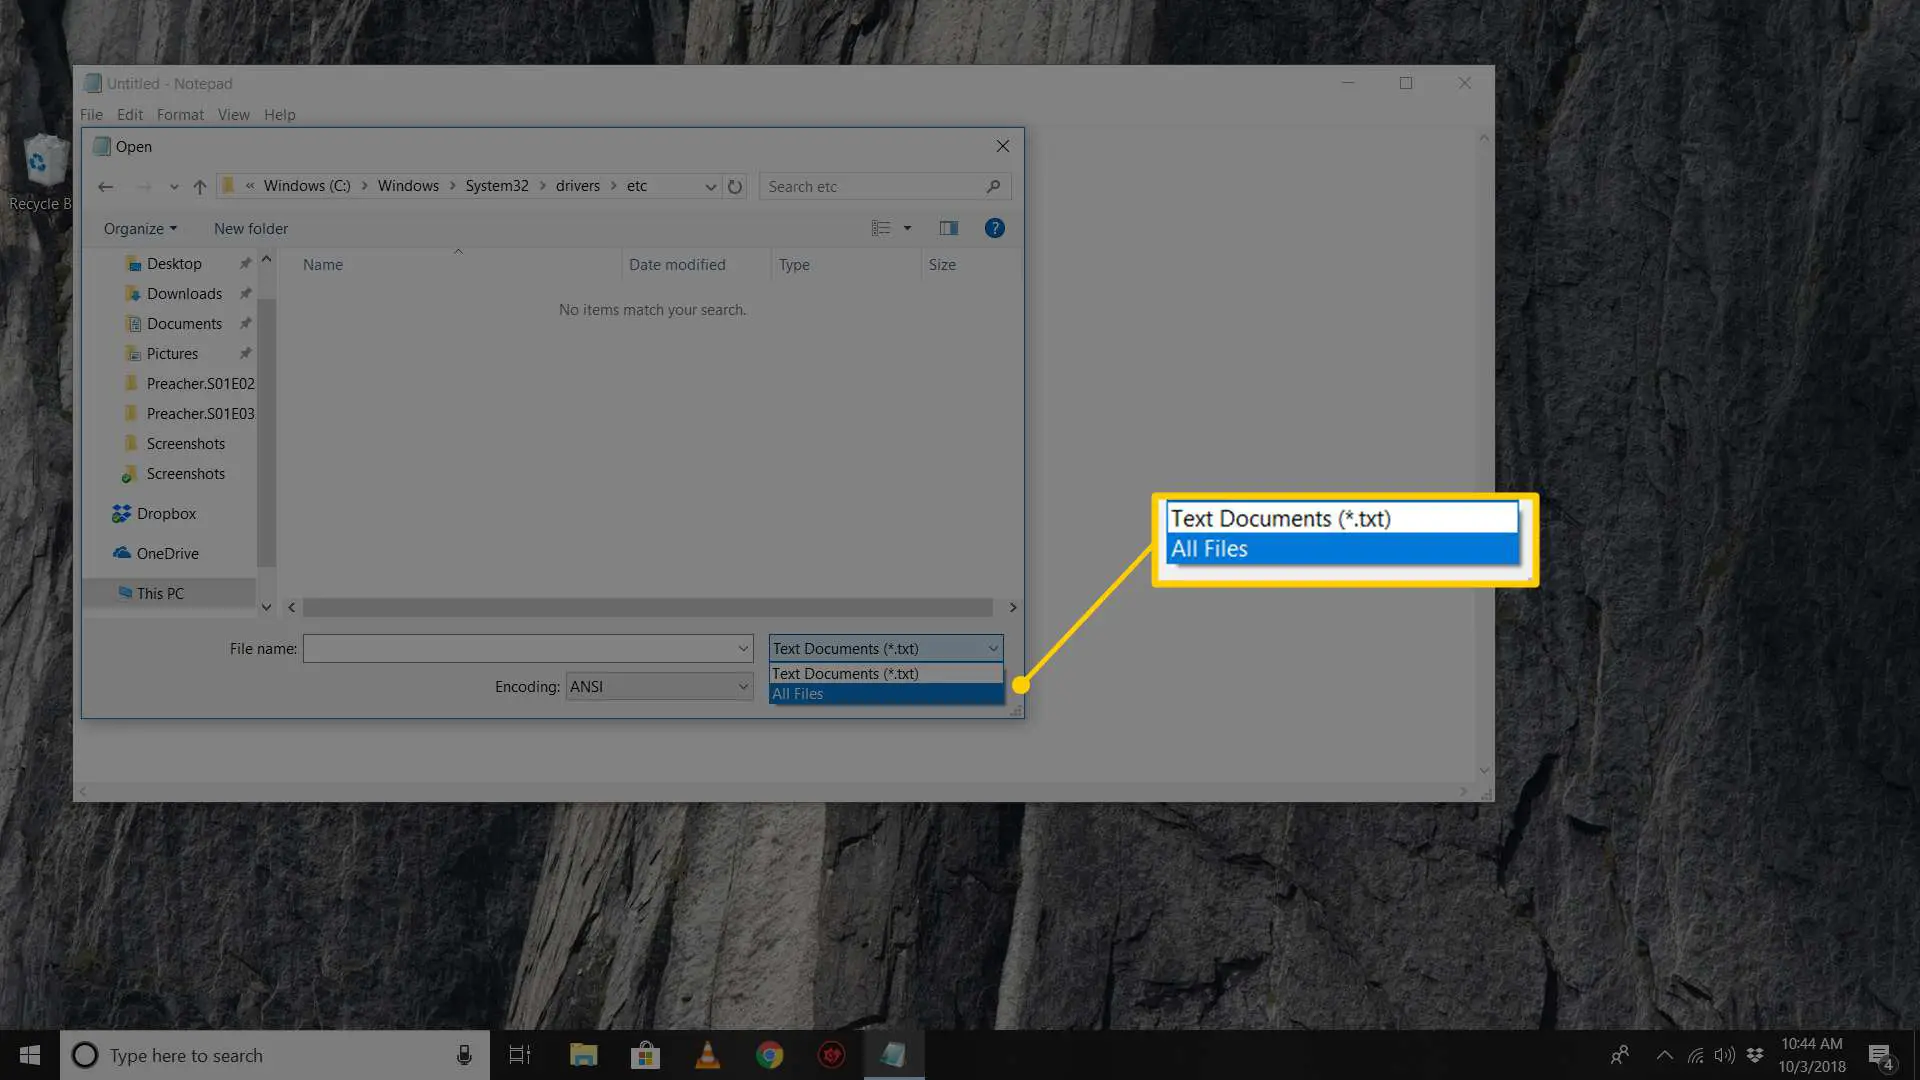 Captura de tela da opção Todos os arquivos ao navegar no diretório de arquivos de hosts no Windows 10 Note Pad